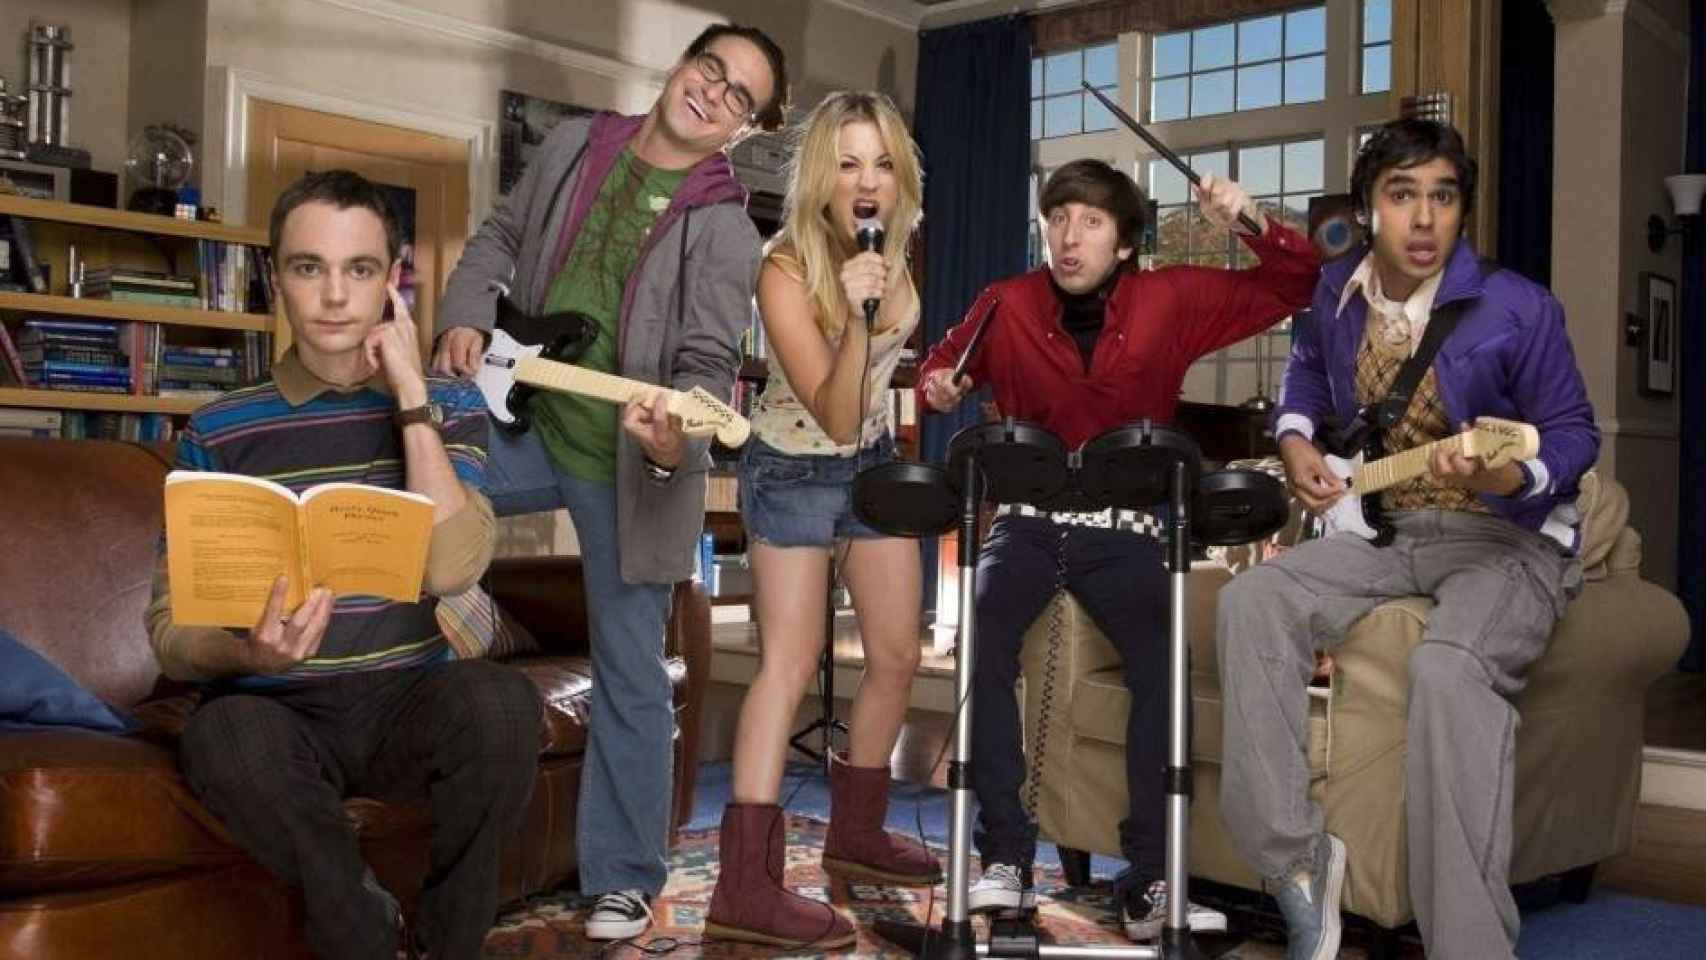 Los actores de la comedia 'The Big Bang Theory' en una imagen promocional de la serie / CG